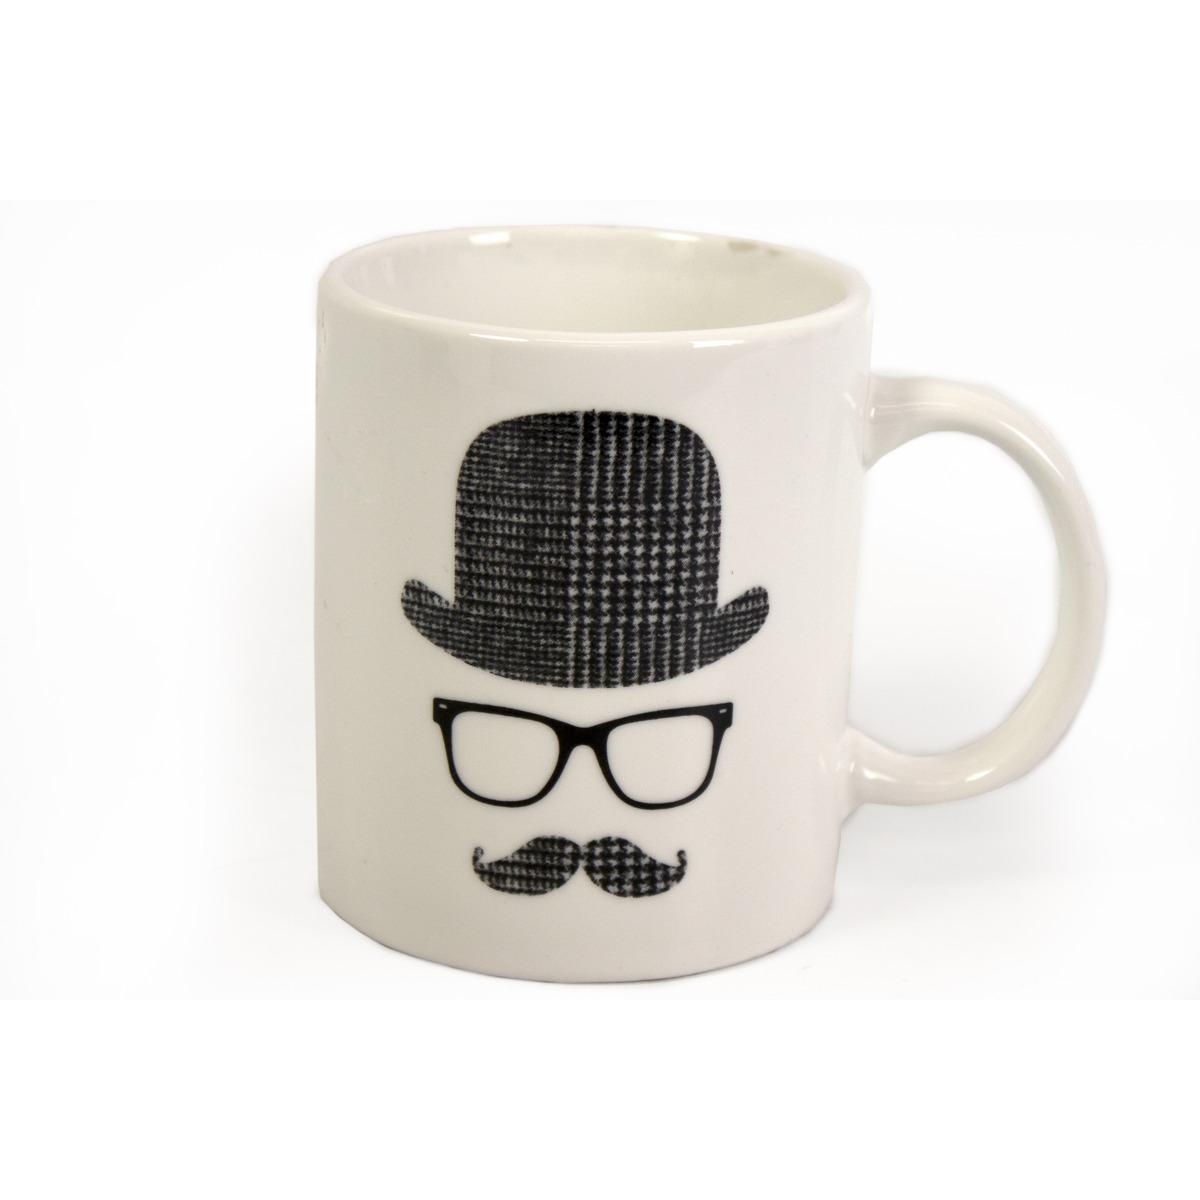 Mug déco moustache en céramique - 9,5 x 8 cm - Modèle Hercule Poirot - Noir, blanc